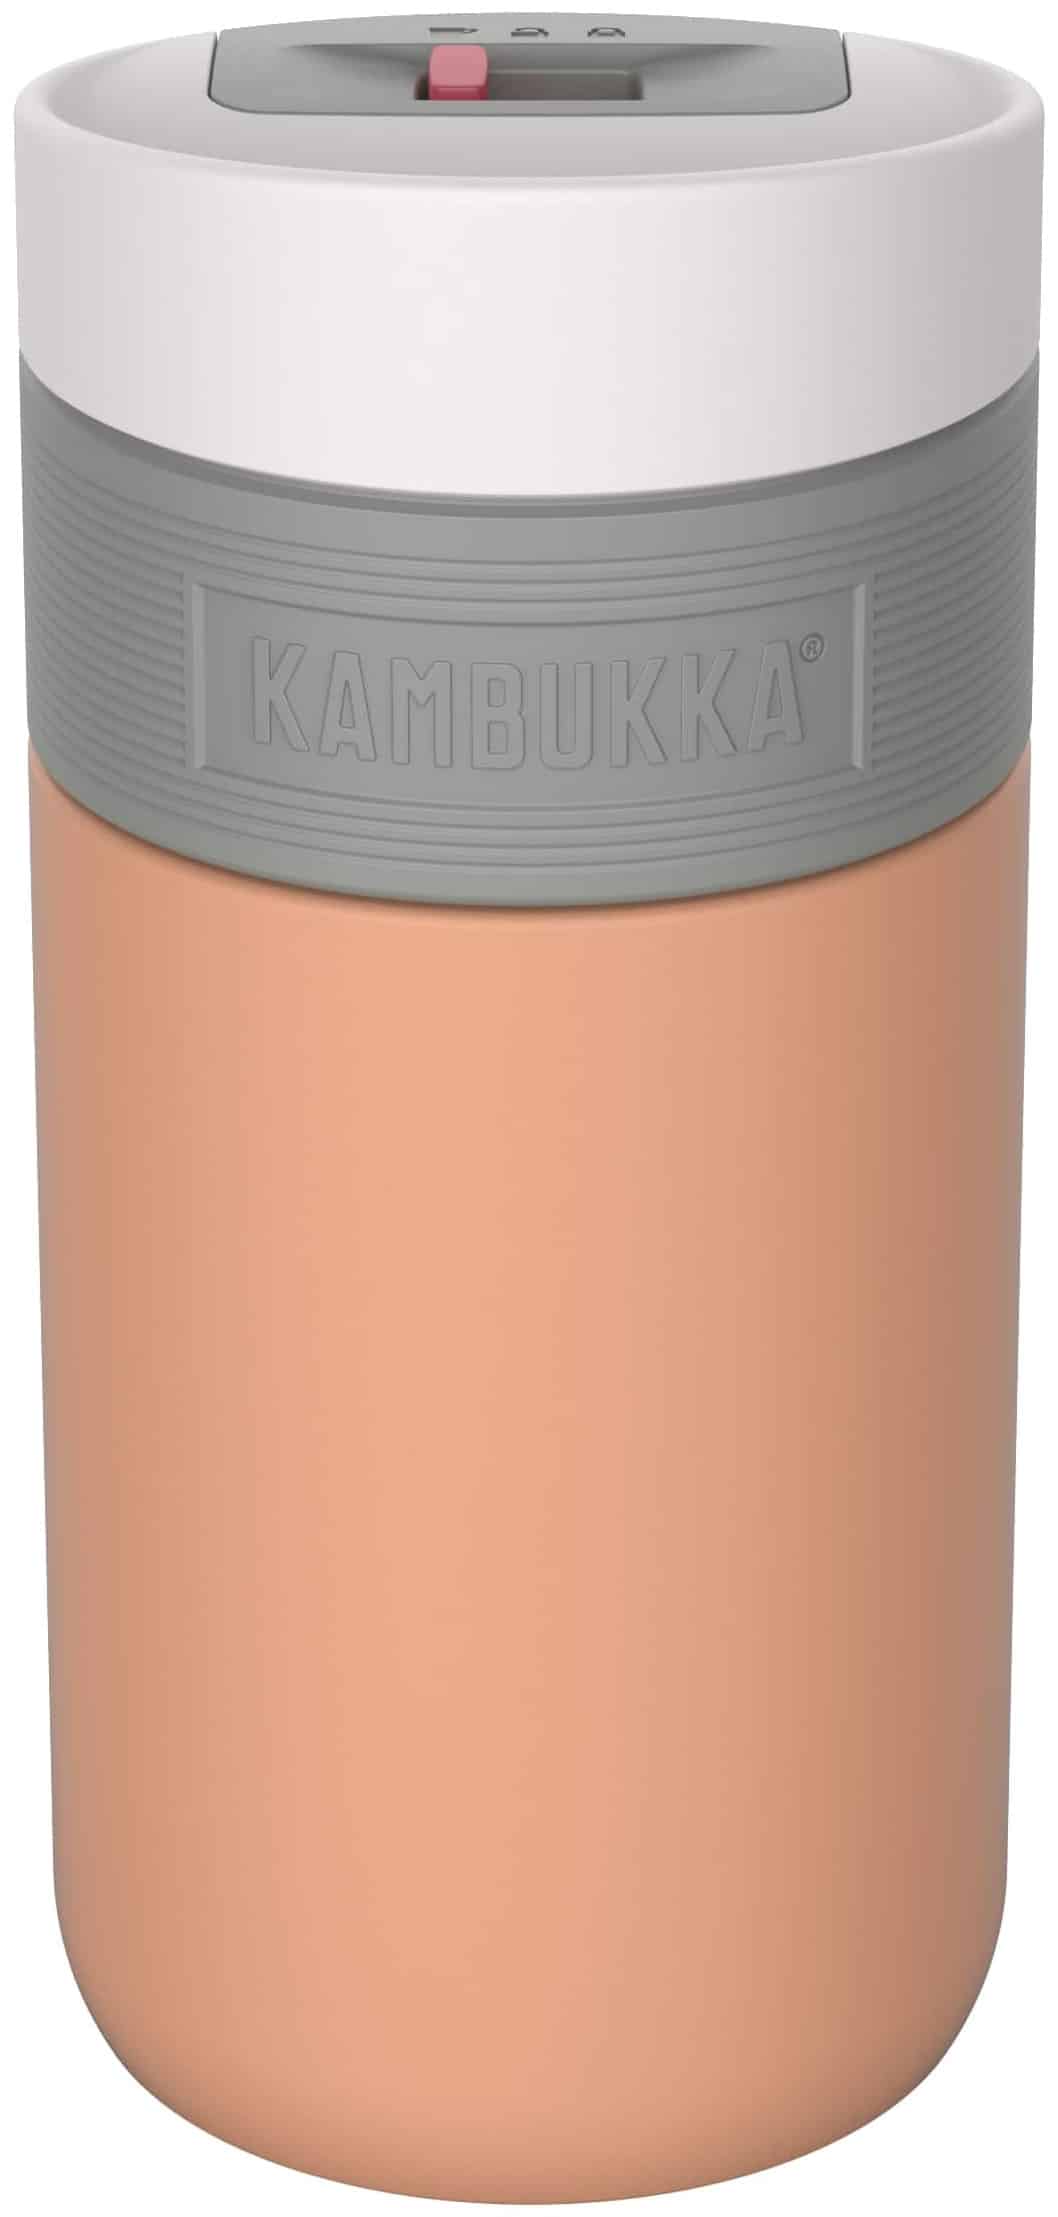 בקבוק שתיה תרמי 300 מ”ל קרמל Kambukka Etna Cantaloupe